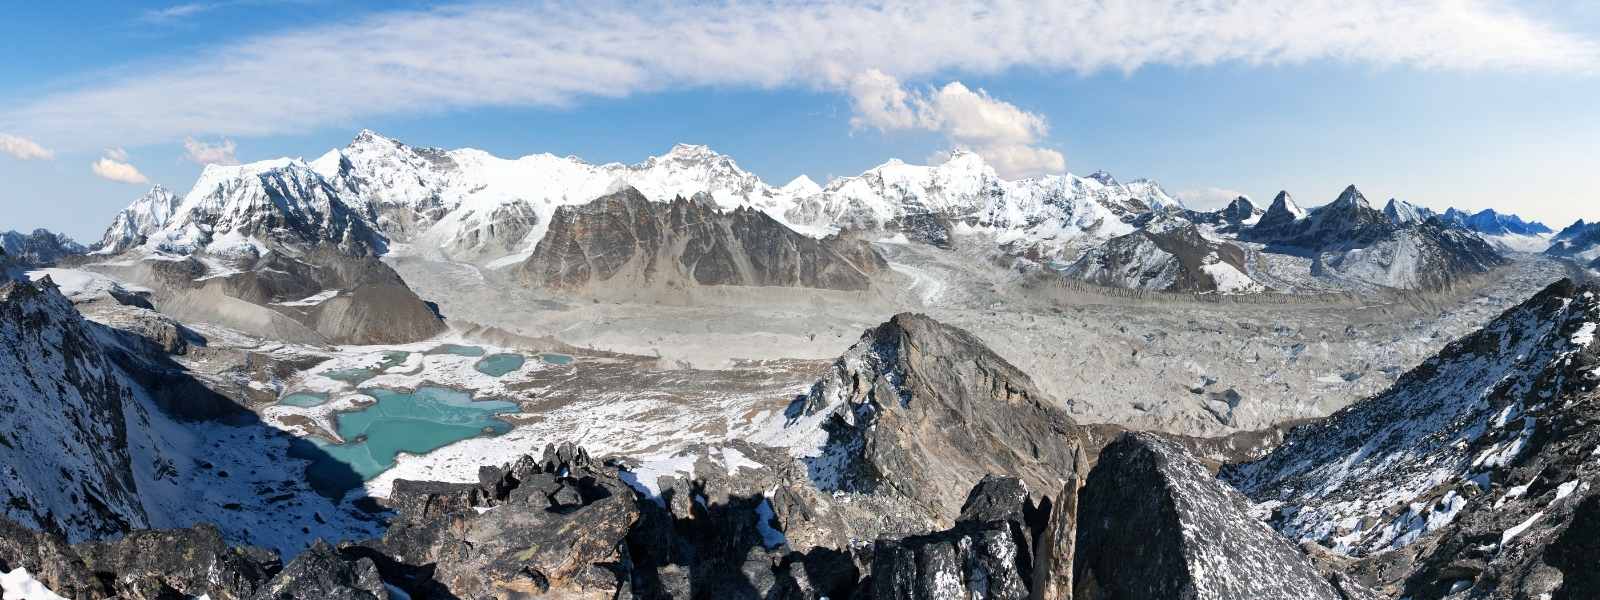 पिघलने वाले ग्लेशियर - माउंट चो ओयू, हिमालय